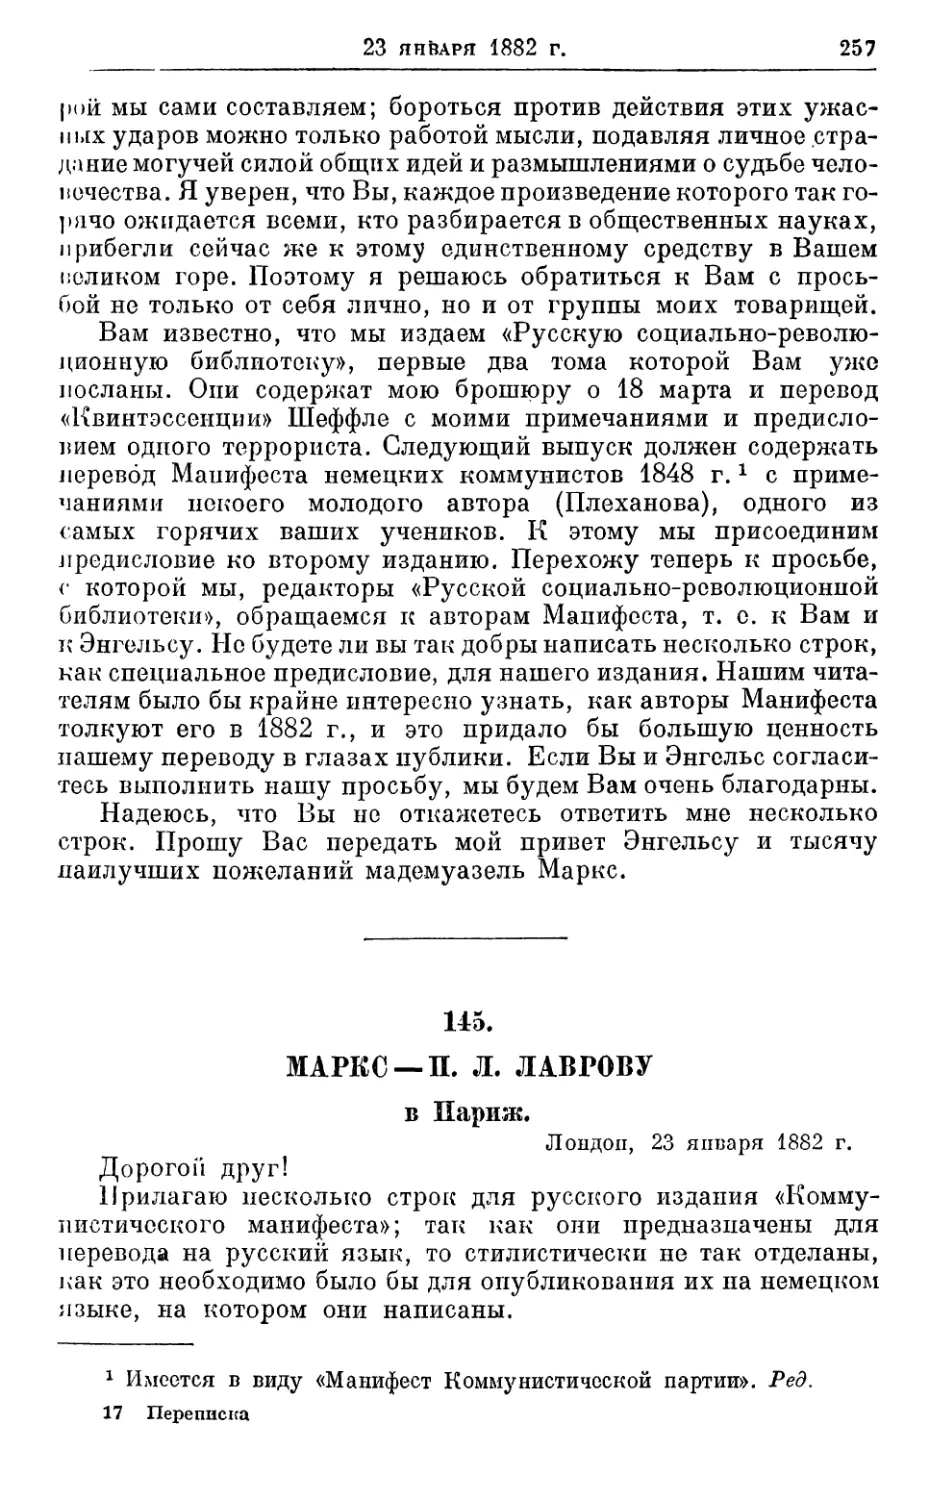 145. Маркс — П. Л. Лаврову, 23 января 1882г